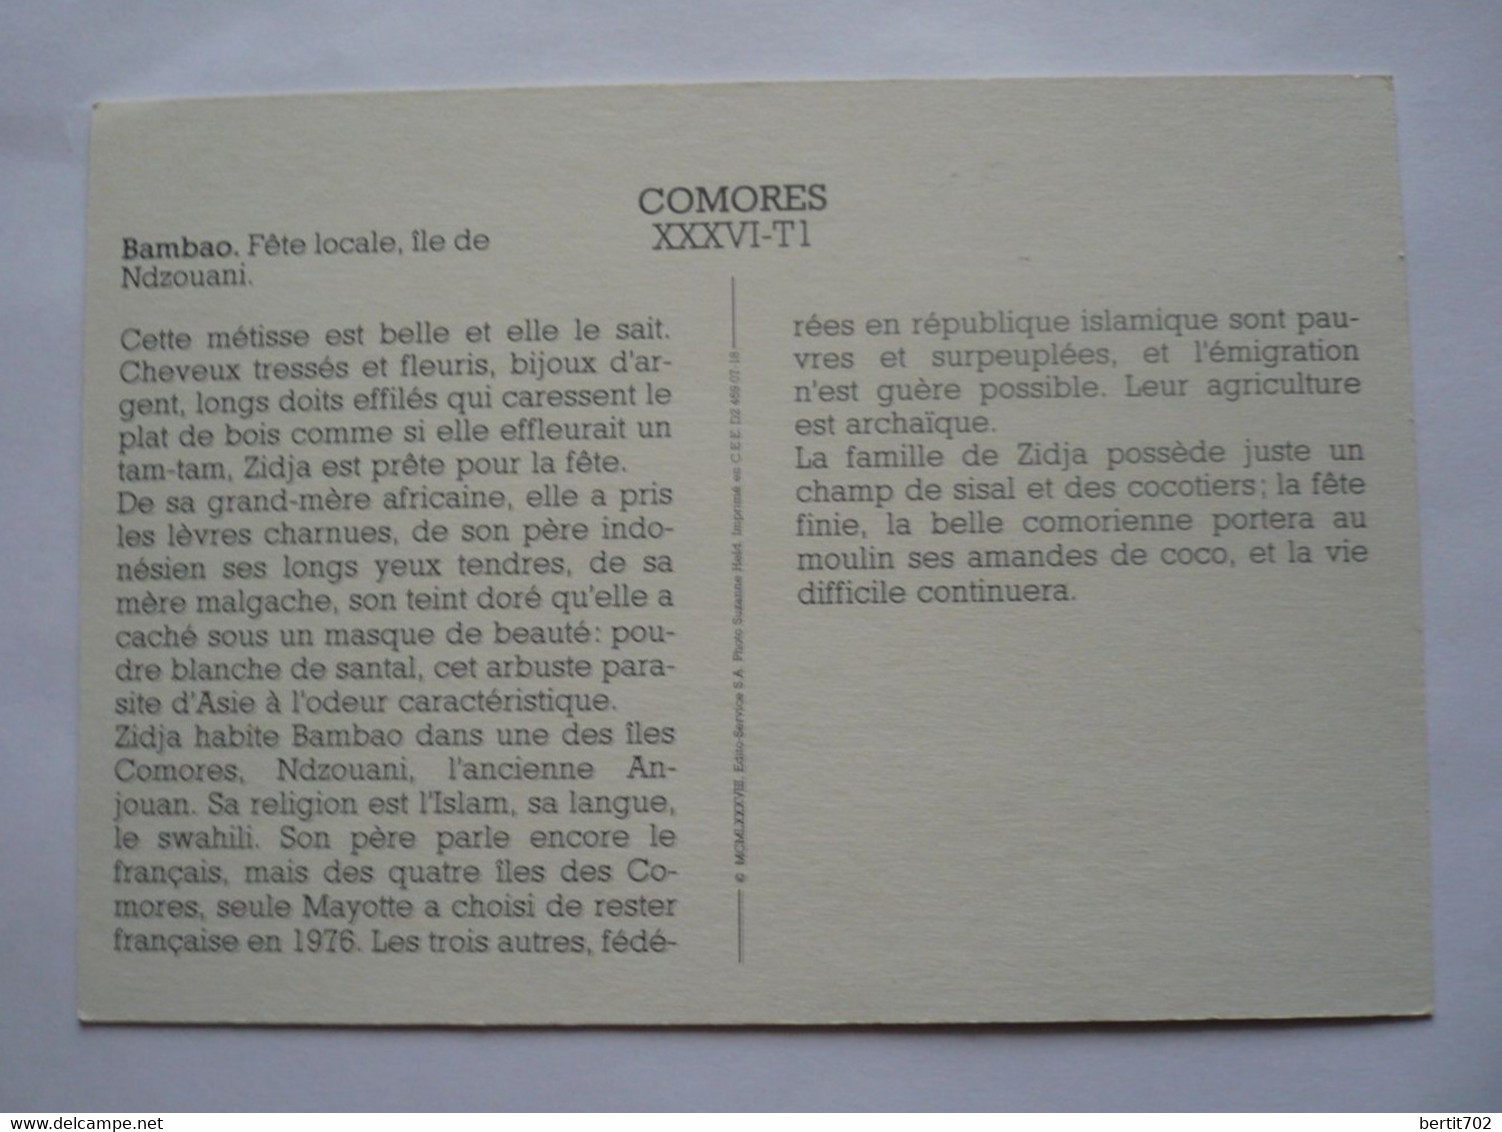 COMORES - BAMBAO - FÊTE LOCALE - ILE DE NDZOUANI - Comores